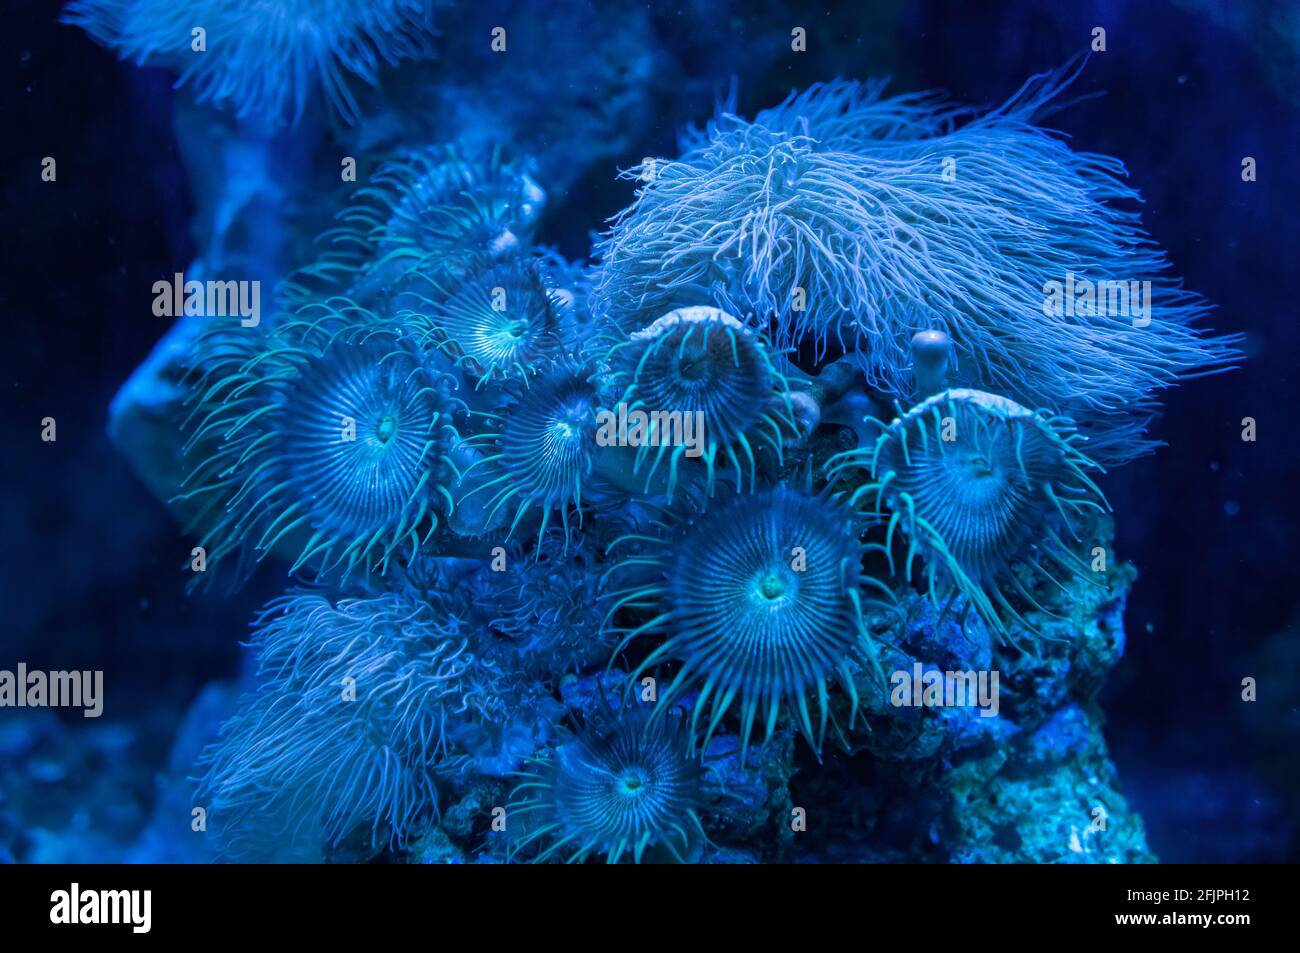 Un arrecife de coral de anémonas marinas (animales depredadores de la orden Actiniaria), parte de la decoración submarina de uno de los tanques de agua marina. Foto de stock